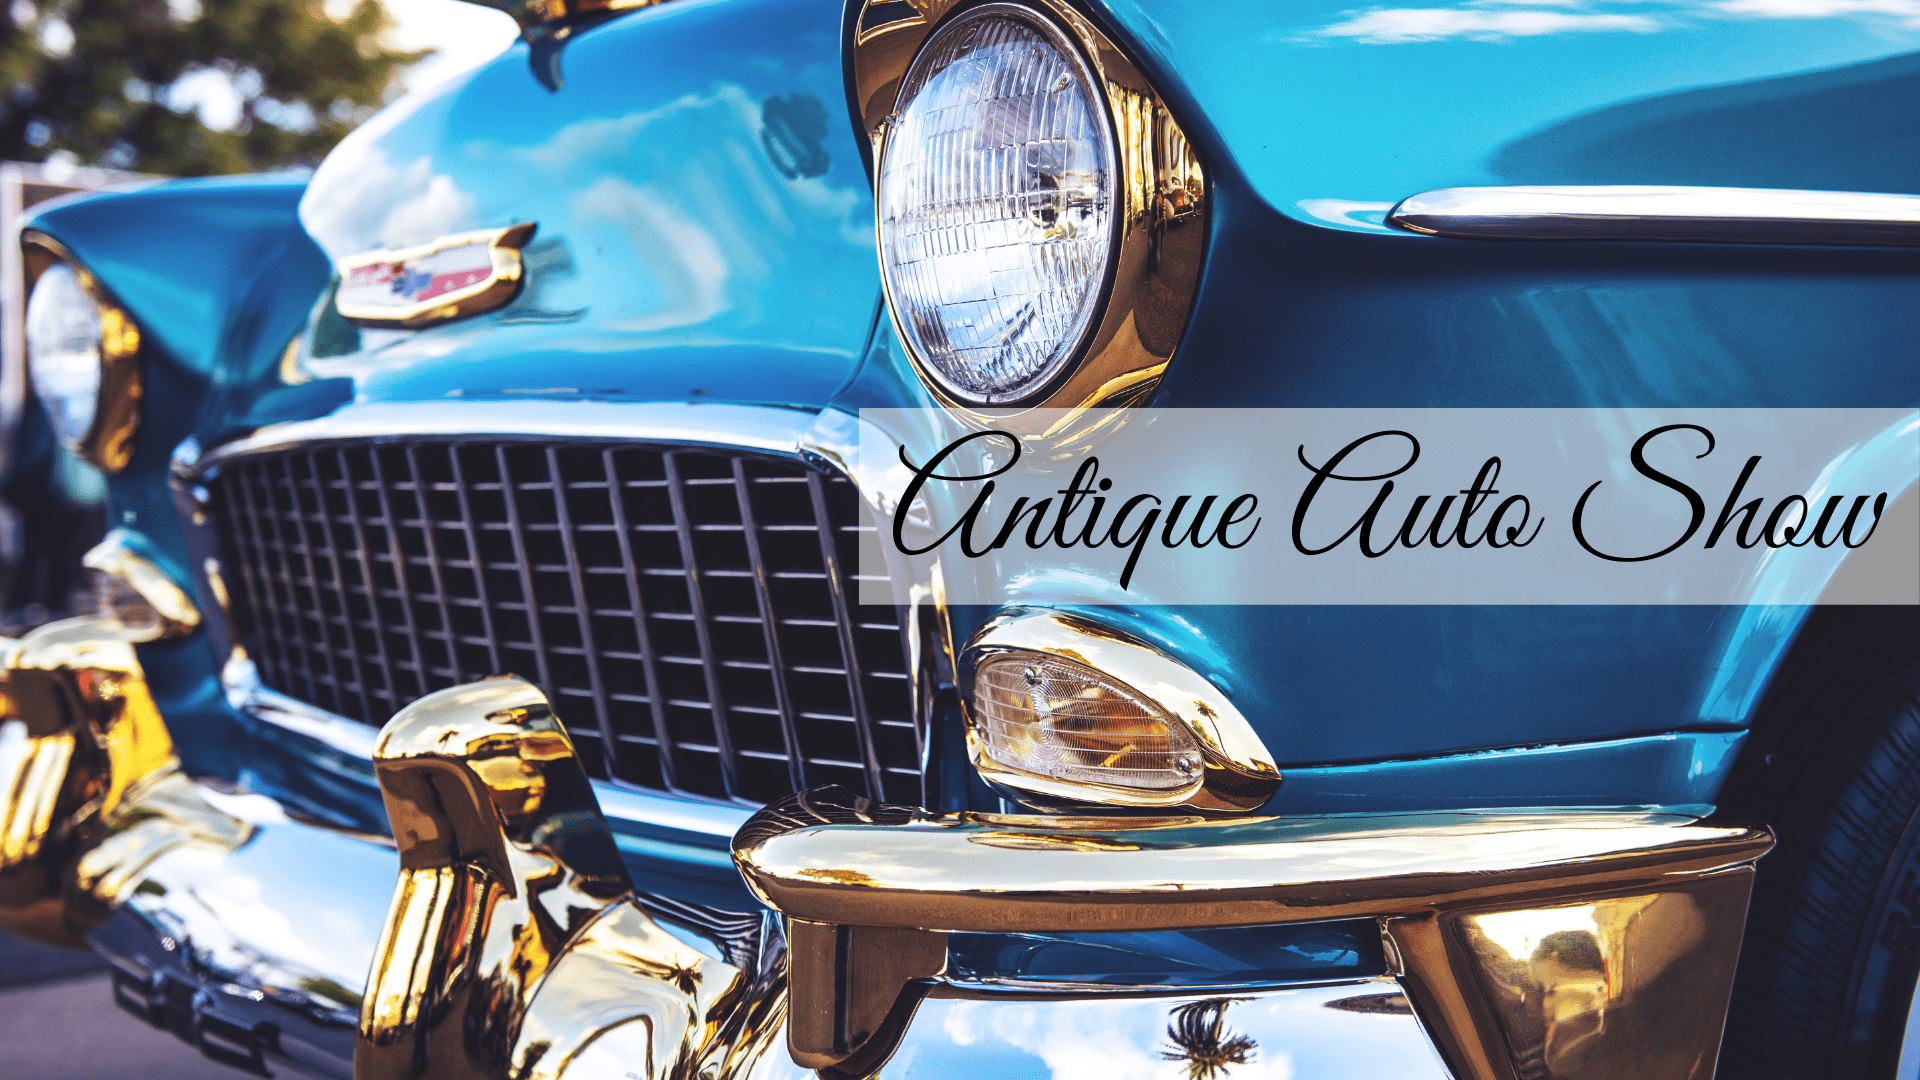 27th Annual Antique Auto Show